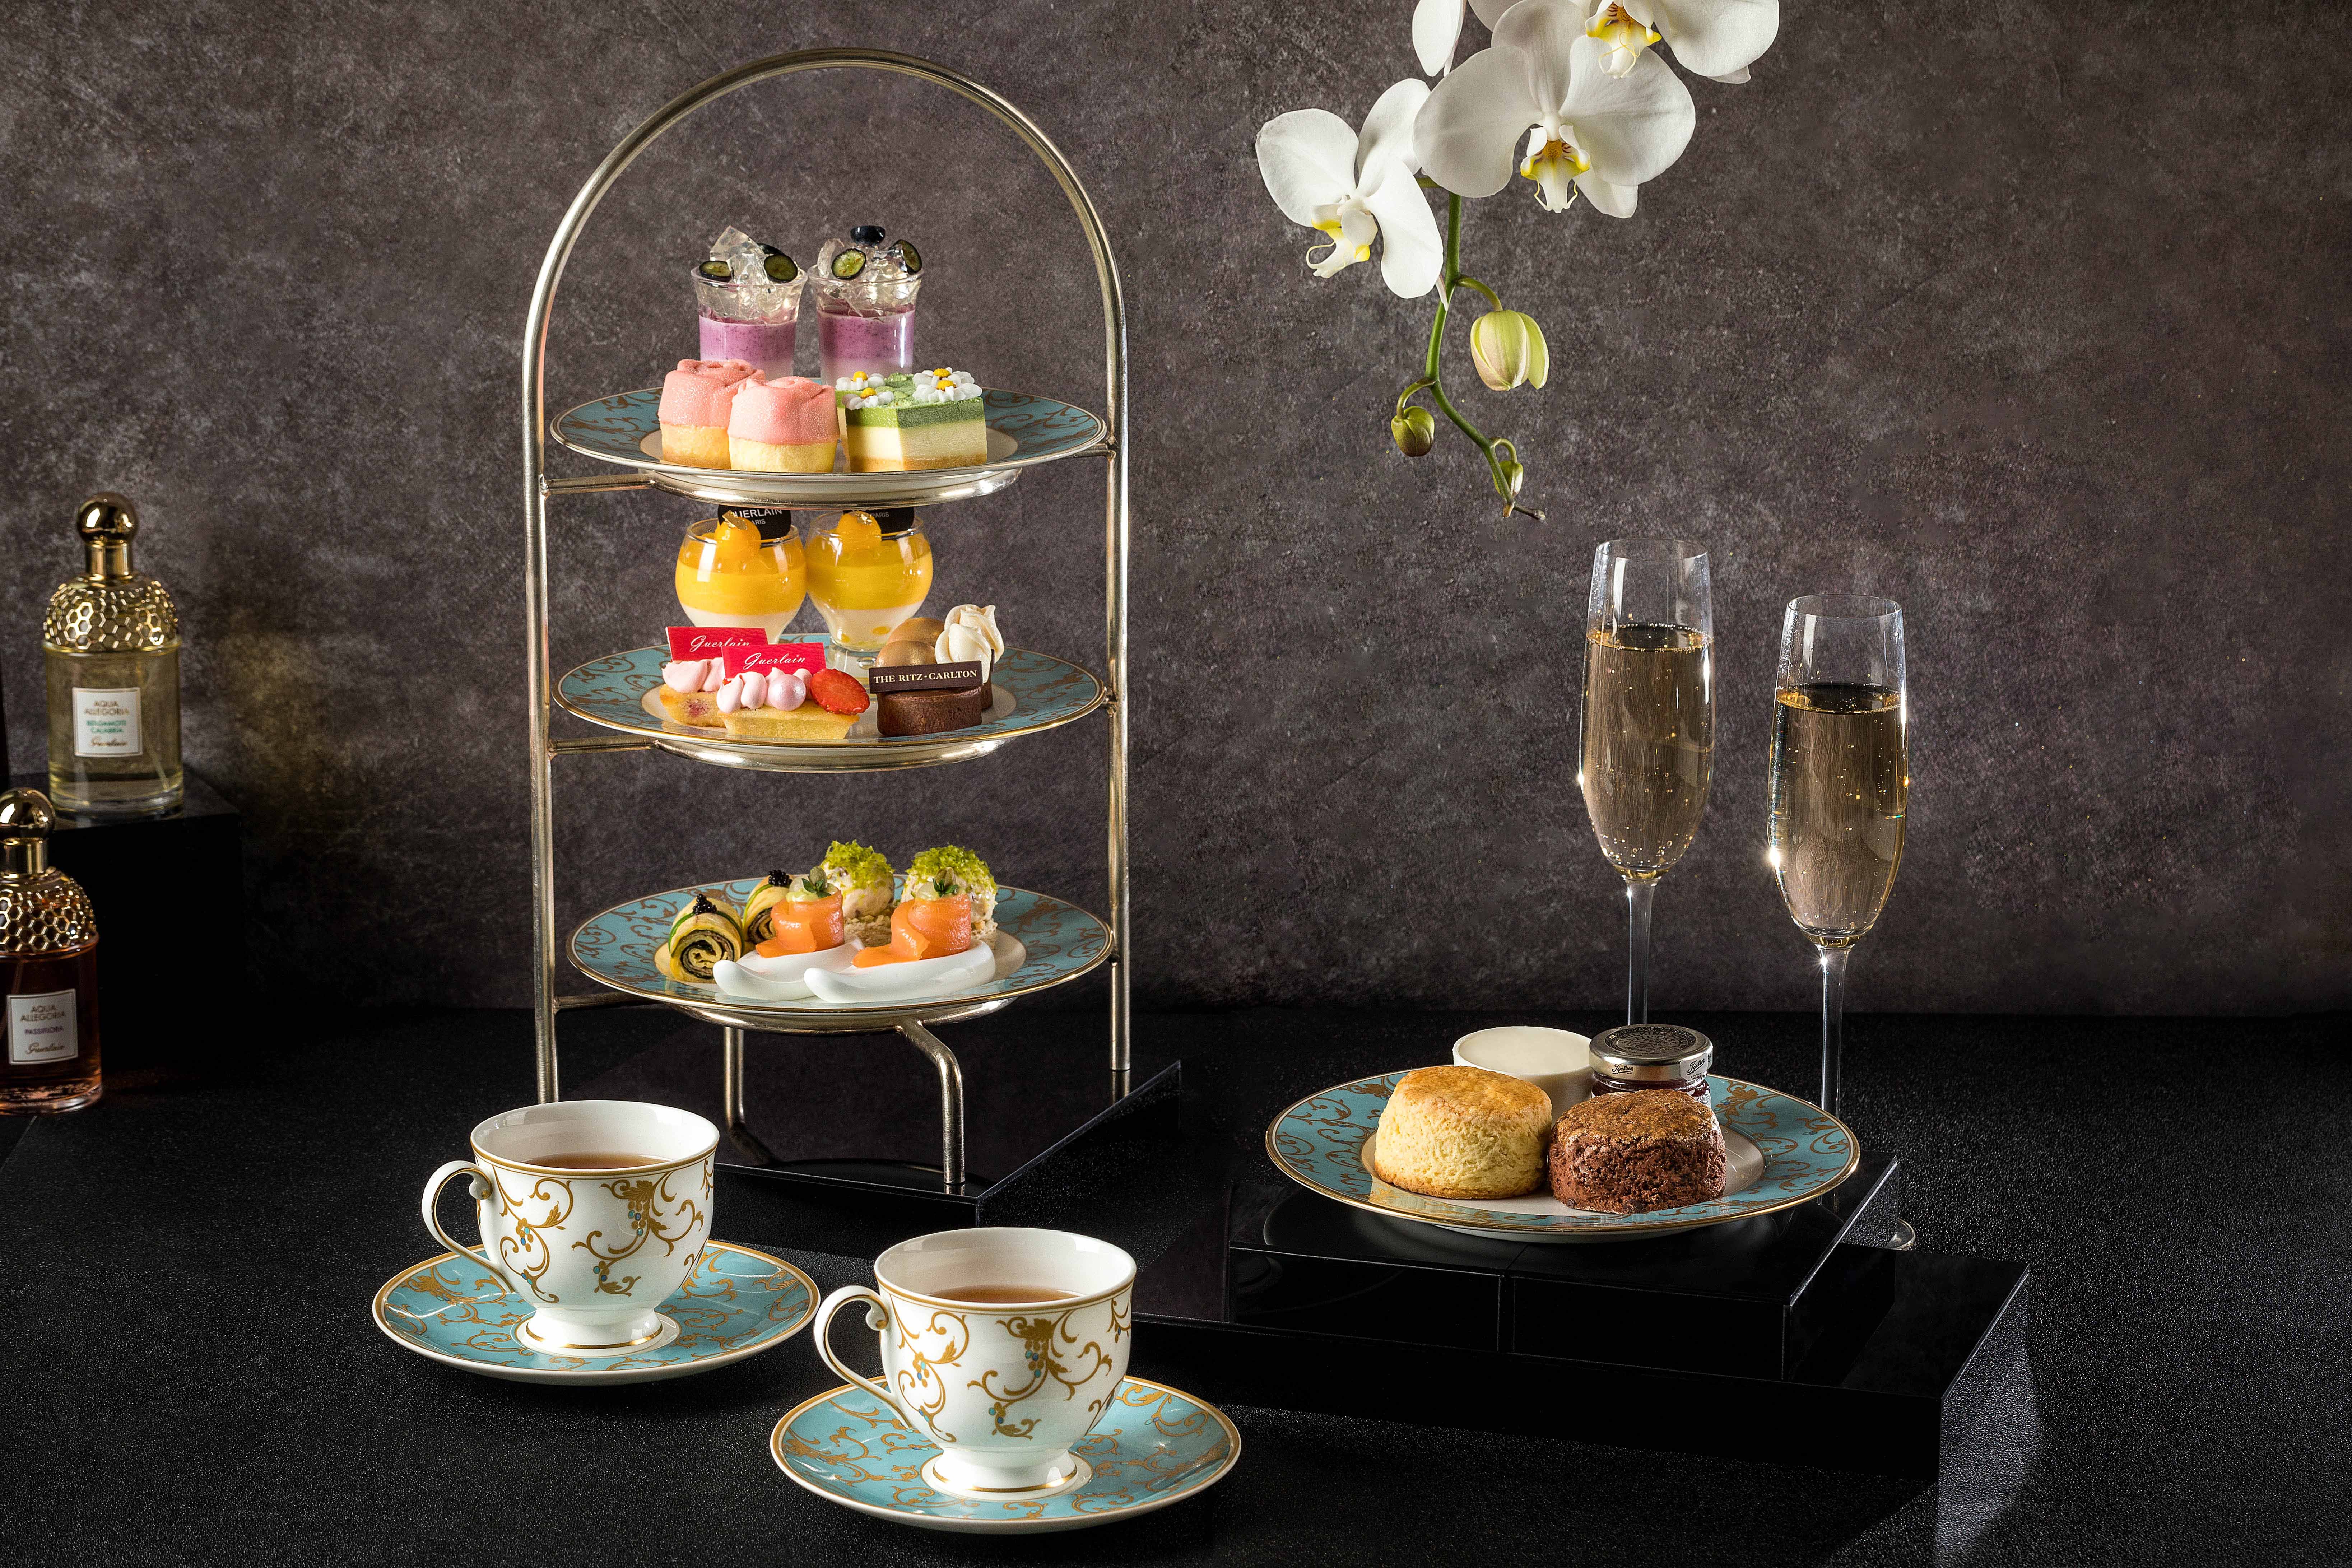 深圳星河丽思卡尔顿酒店与百年传奇品牌法国娇兰 联袂呈现“心悦·自然”主题下午茶